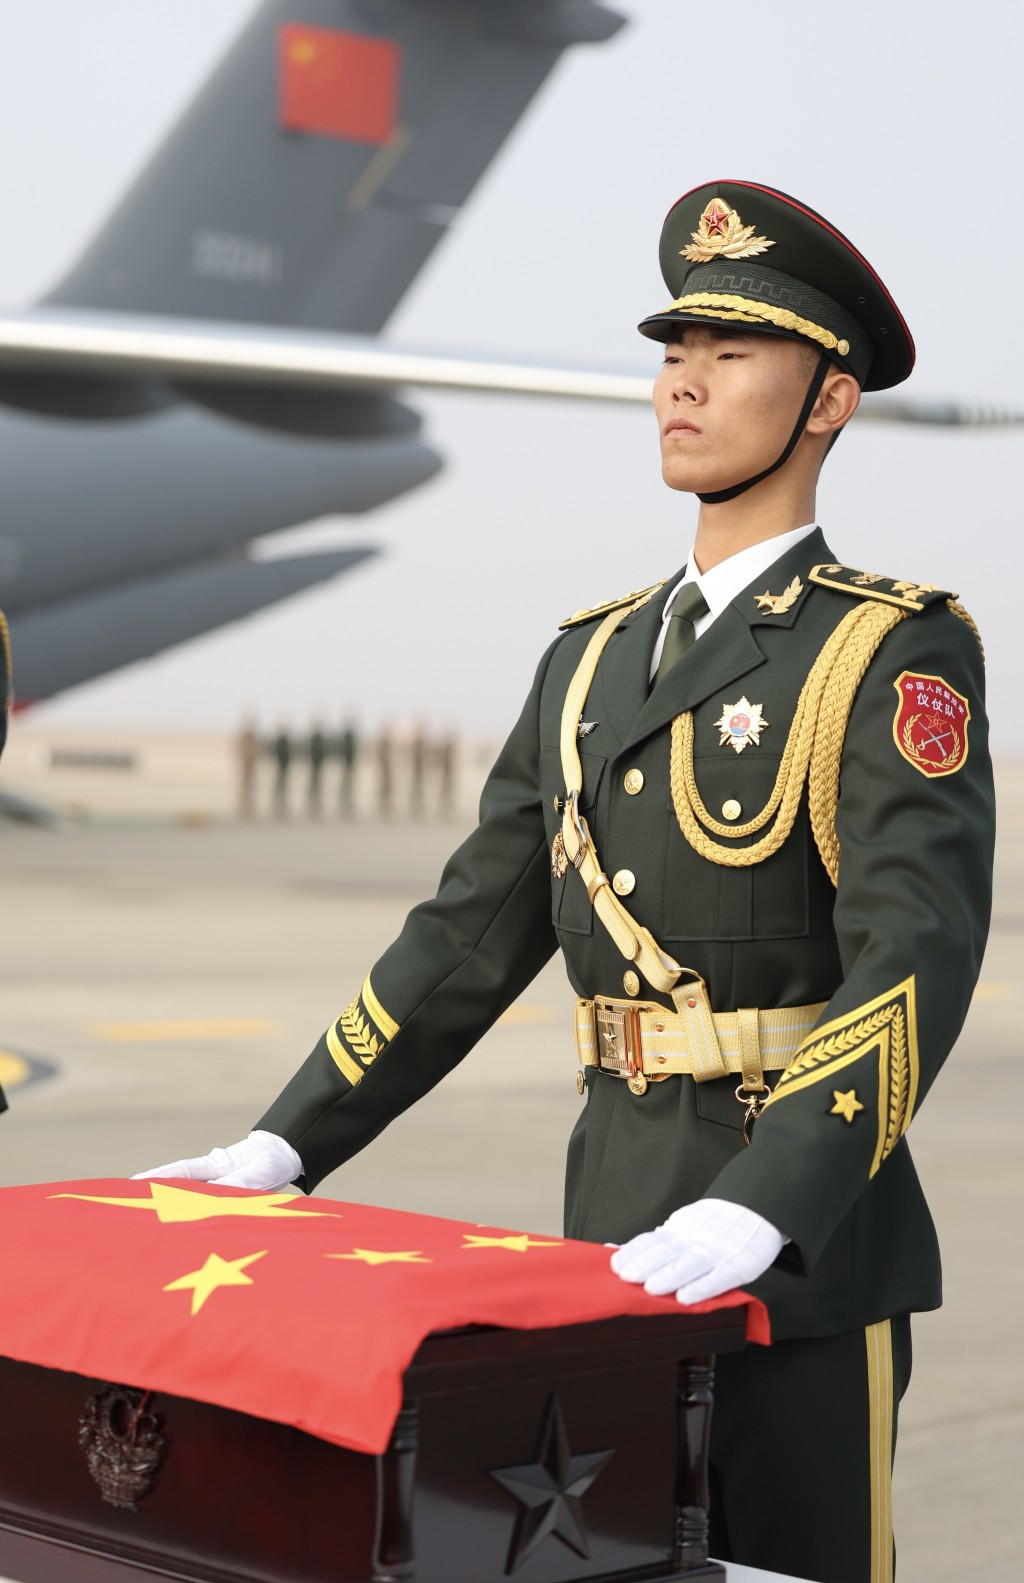 中国以最高礼仪迎志愿军遗骨回国。